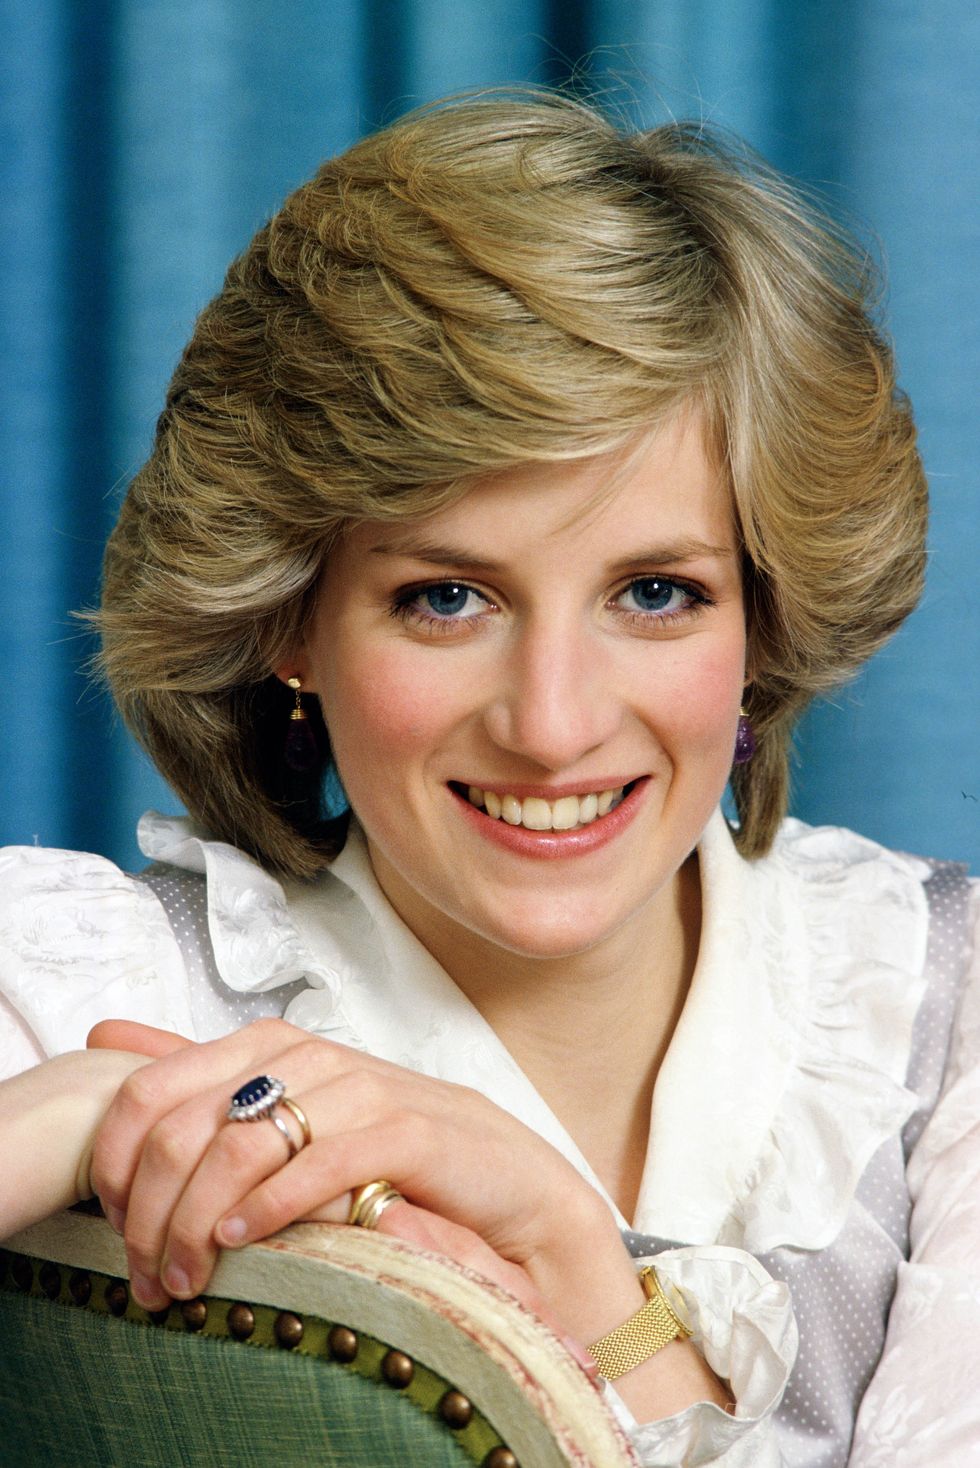 Diana, Princess of Wales at home in Kensington Palace